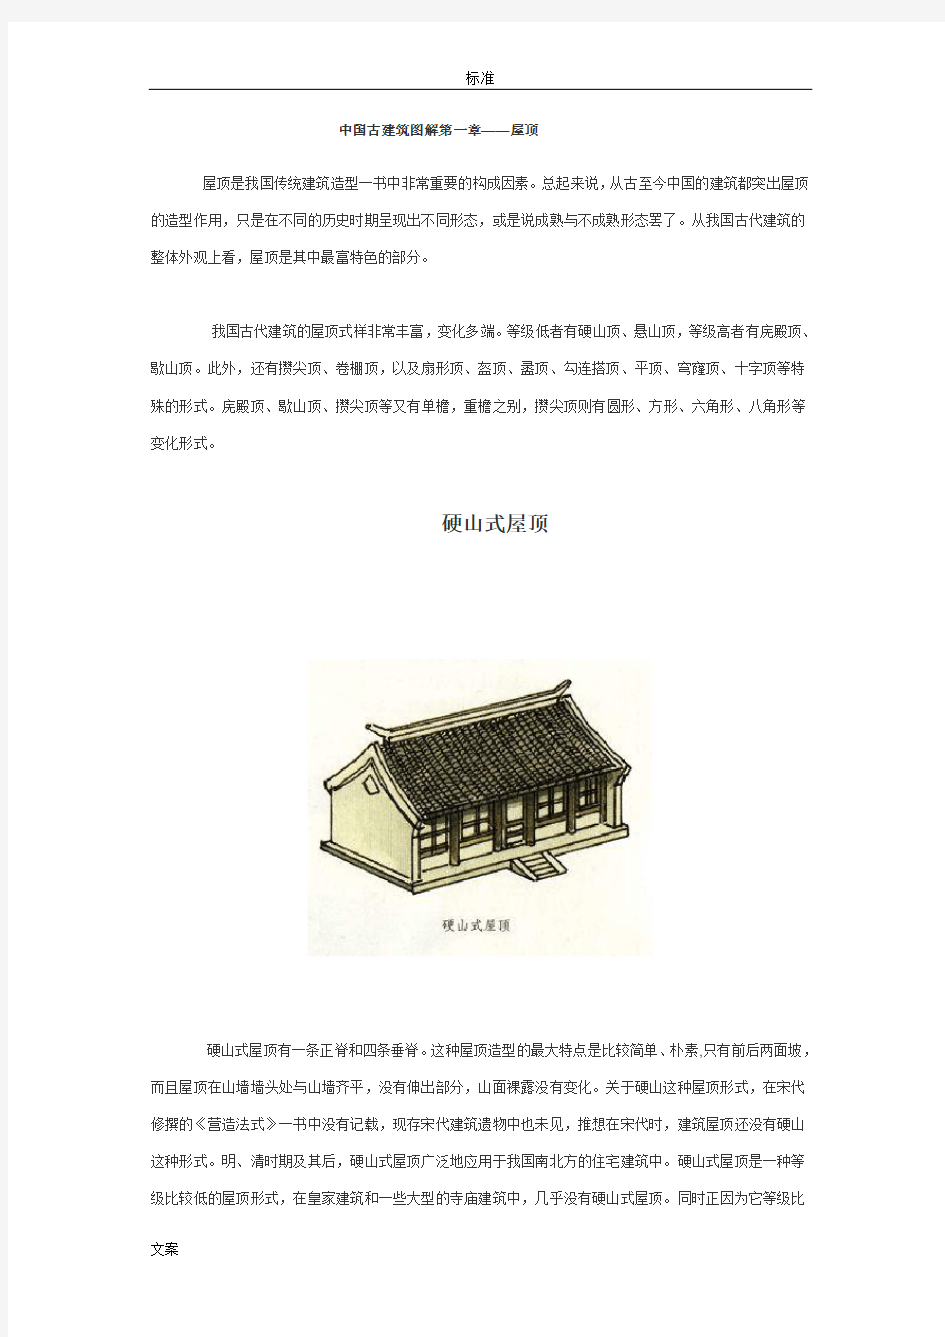 中国古建筑现用图解-屋顶